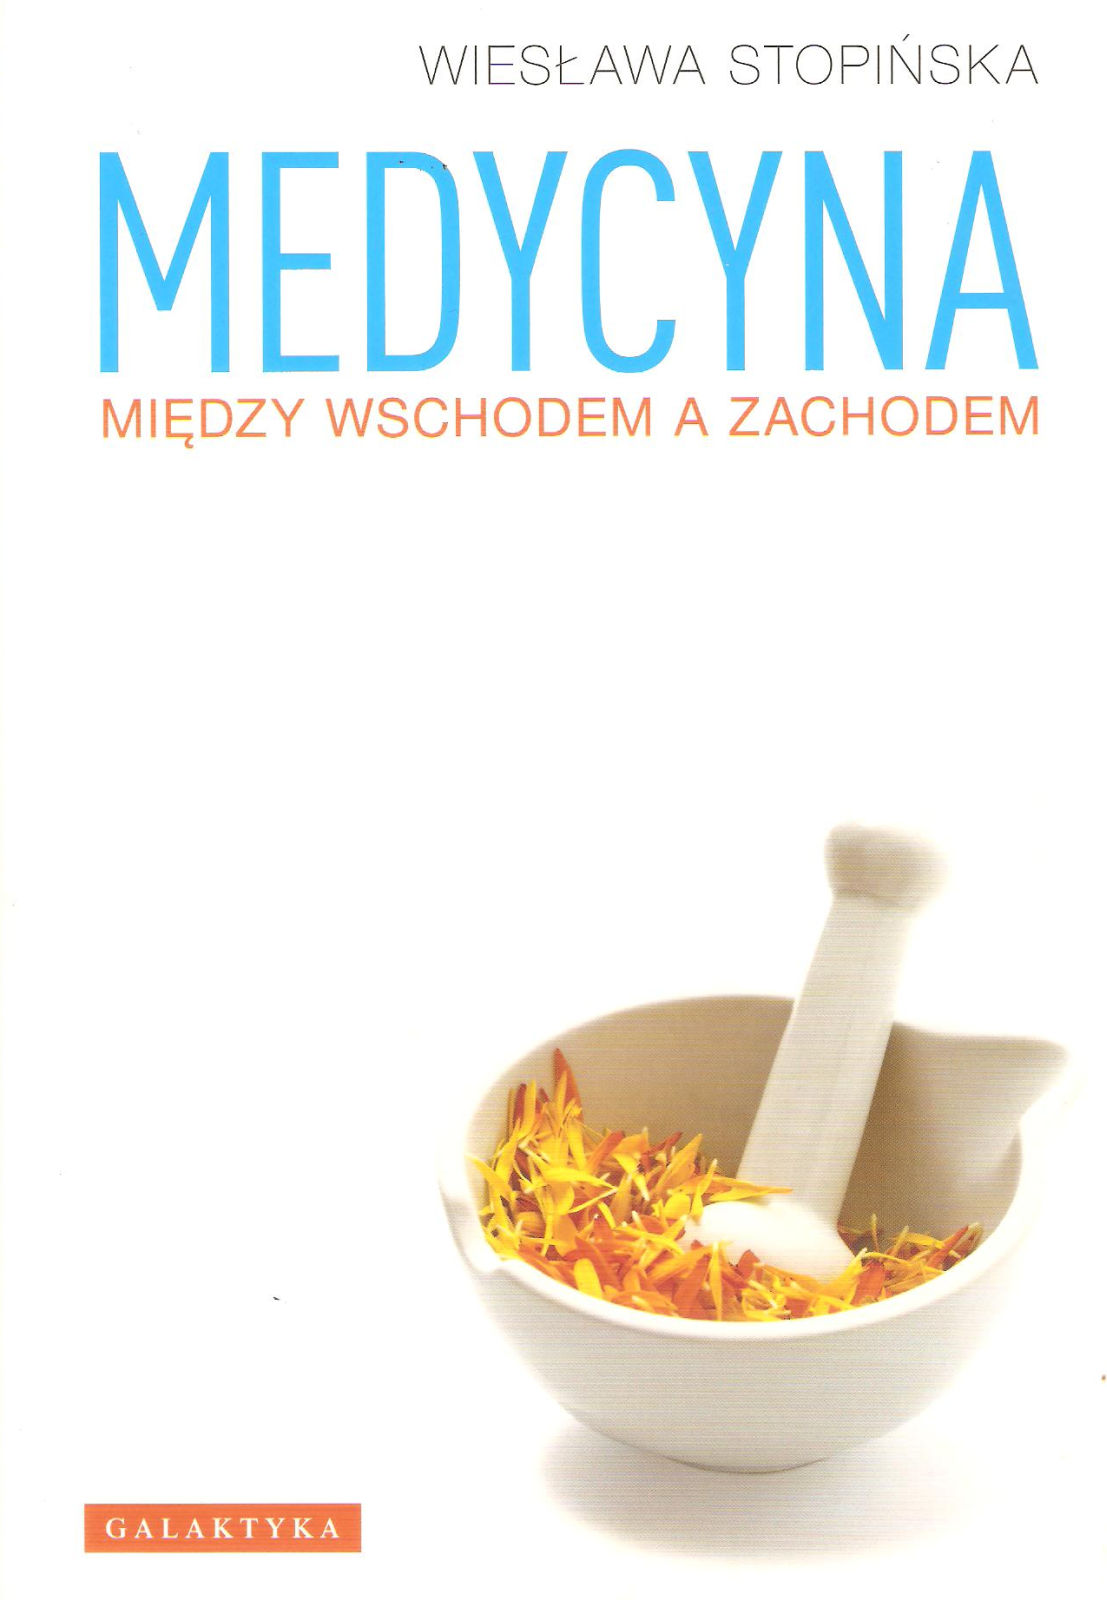 Medycyna między Wschodem a Zachodem, wydanie 2011